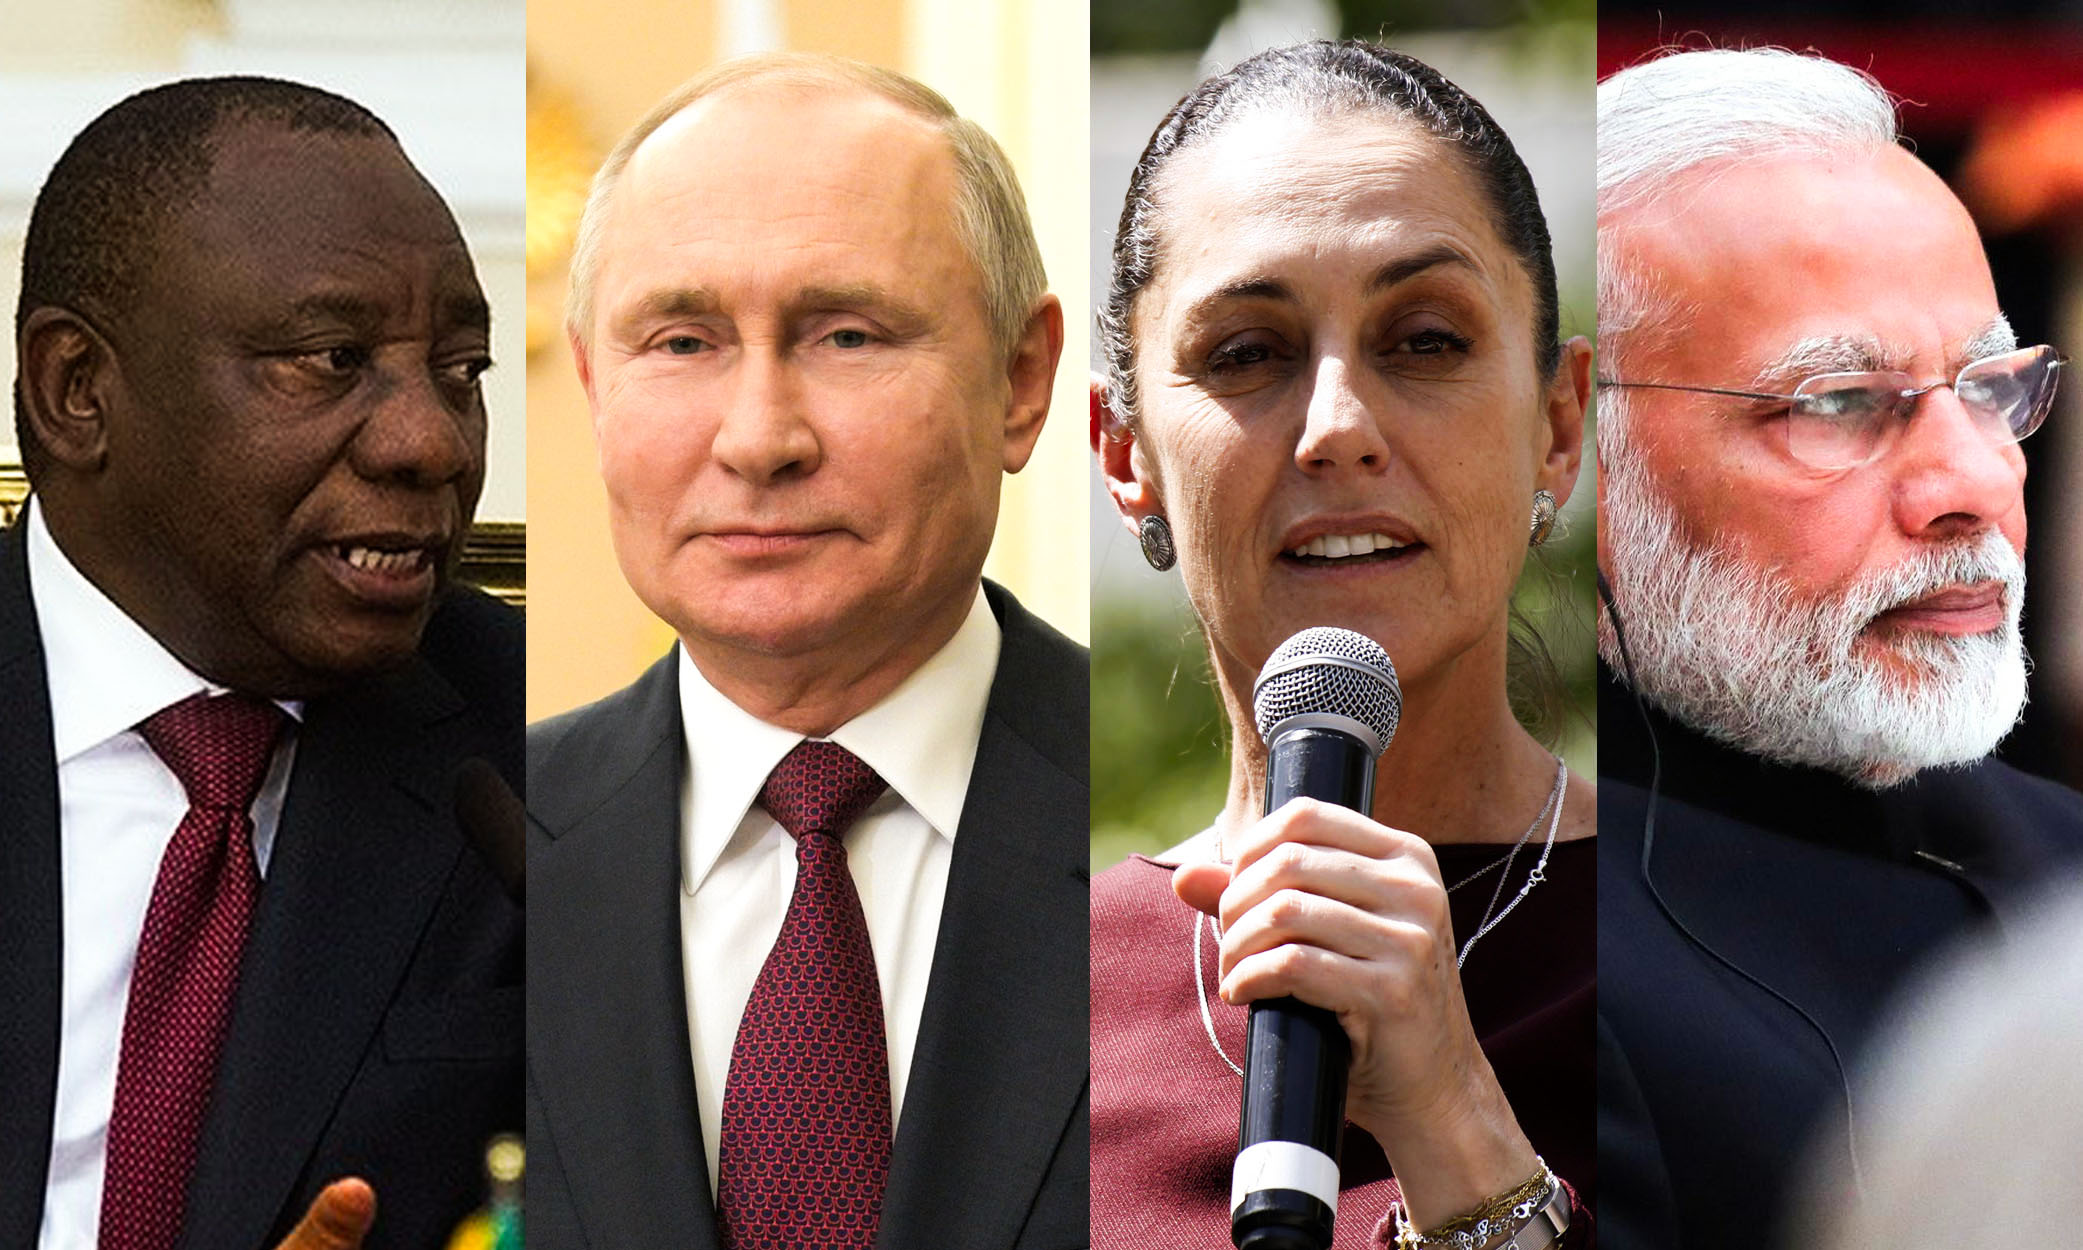 کلودیا شینبام، ولادیمیر پوتین، سیریل رامافوزا و نارندرا مودی چهره های کلیدی در بزرگترین سال انتخابات تاریخ خواهند بود.